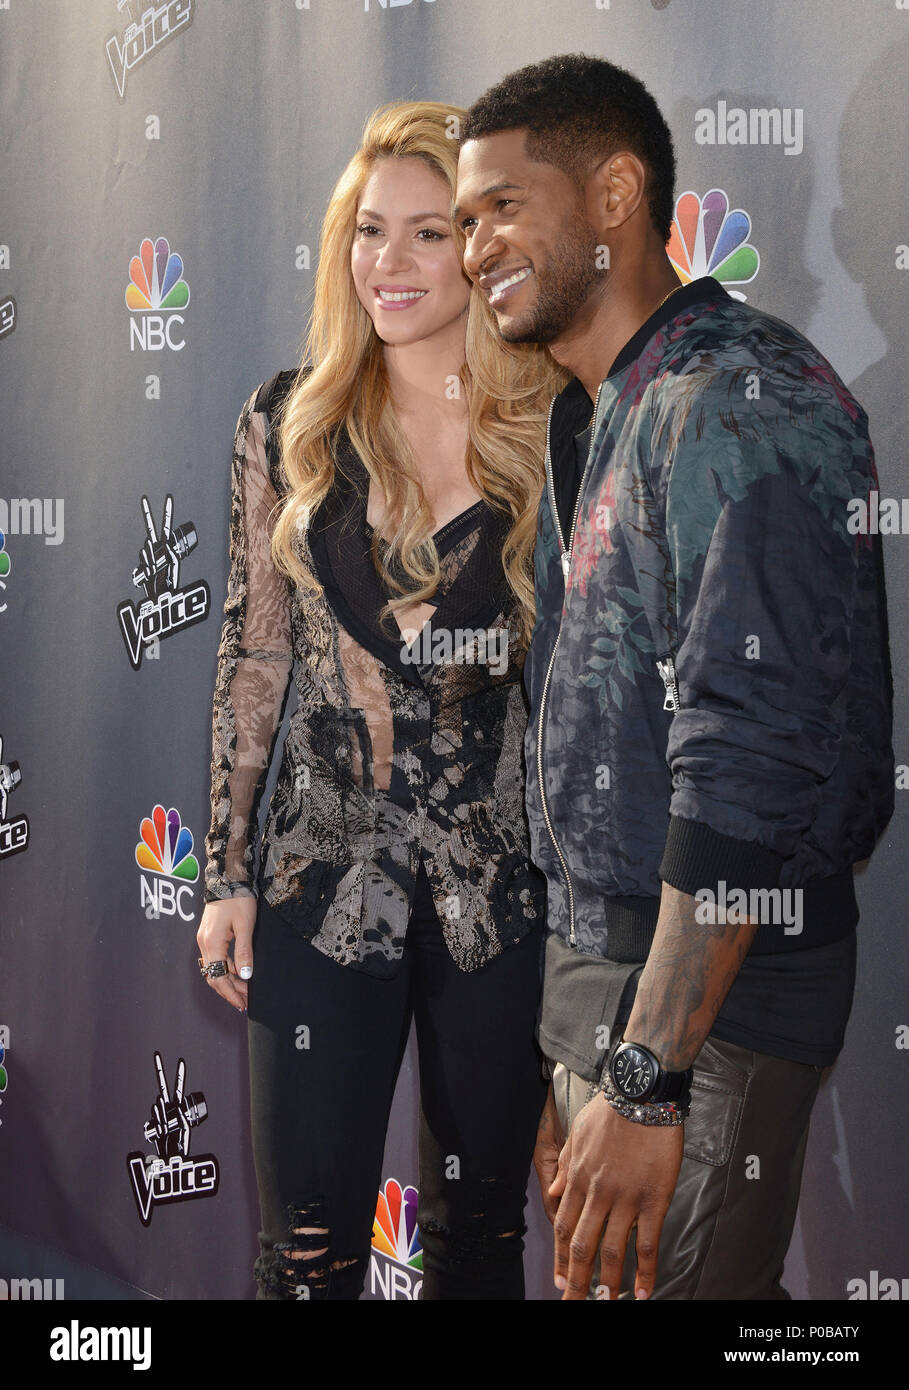 Shakira et Usher : We'Re Retour La voix au parti Sayers Club à Los Angeles. Shakira et Usher 143 cas à Hollywood Life - Californie, Red Carpet Event,  USA, Cinéma, Célébrités, photographie, Bestof,